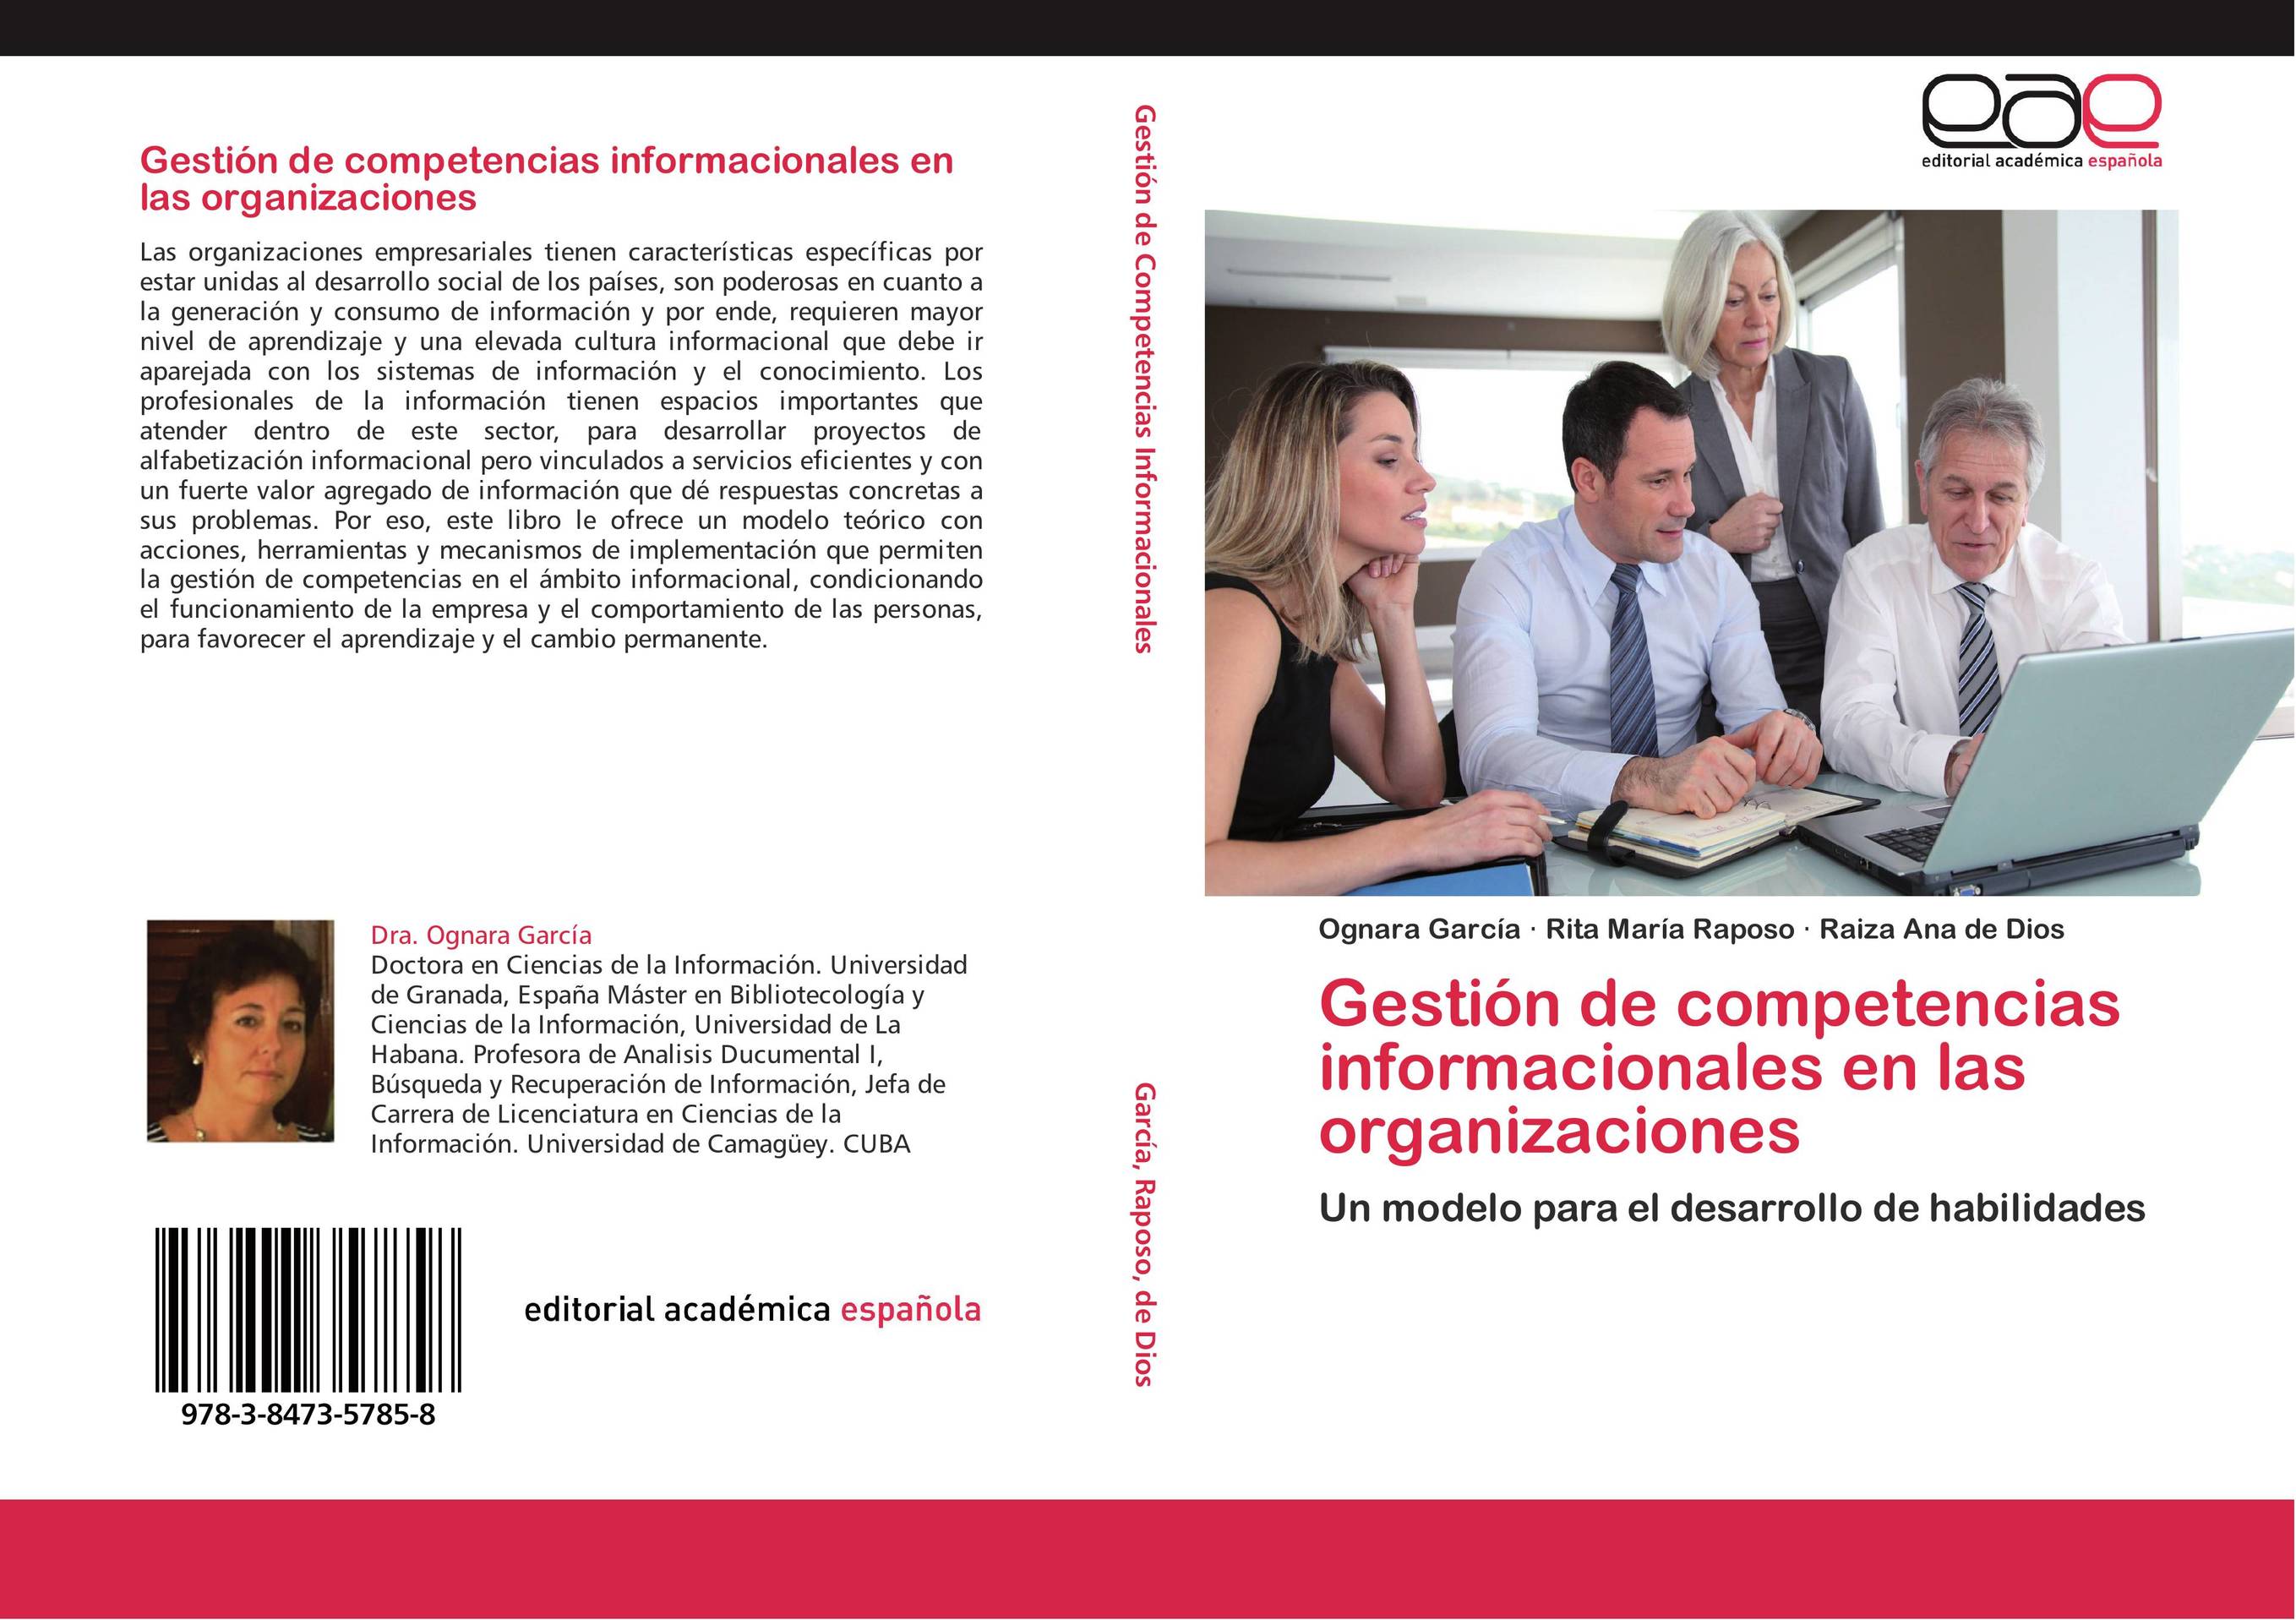 Gestión de competencias informacionales en las organizaciones